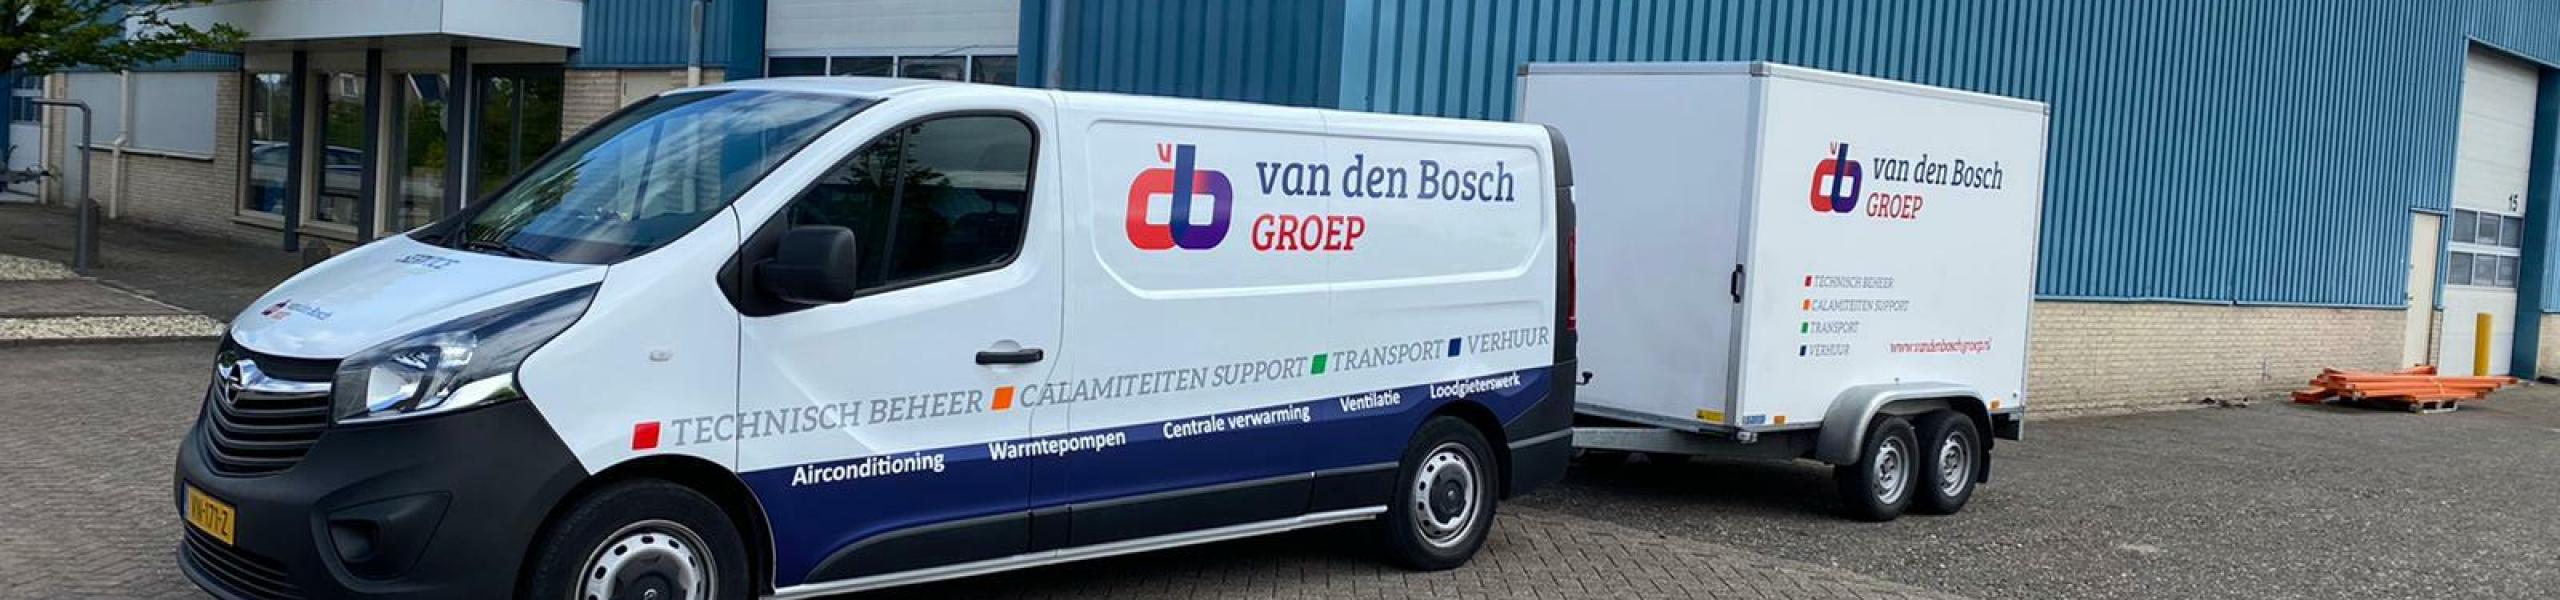 Van den Bosch Groep